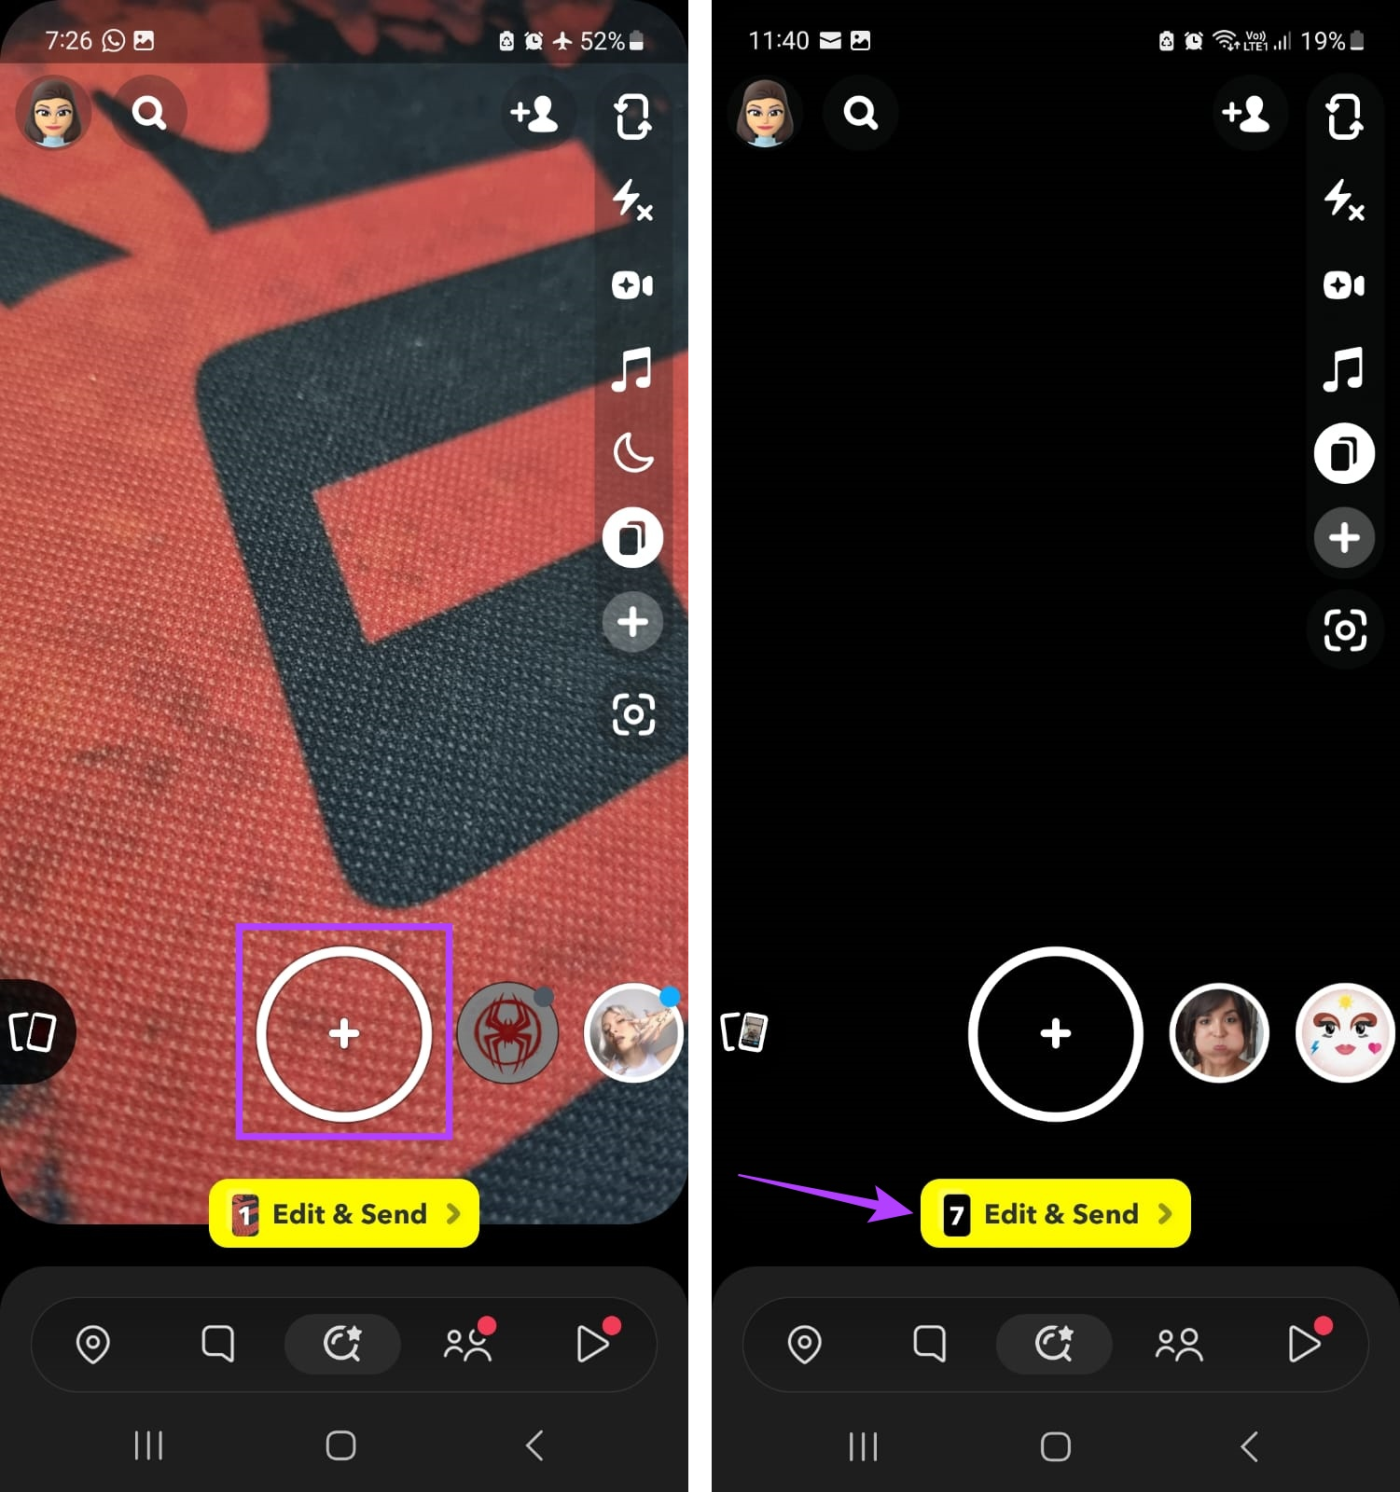 Cómo agregar fotos del carrete a la historia de Snapchat